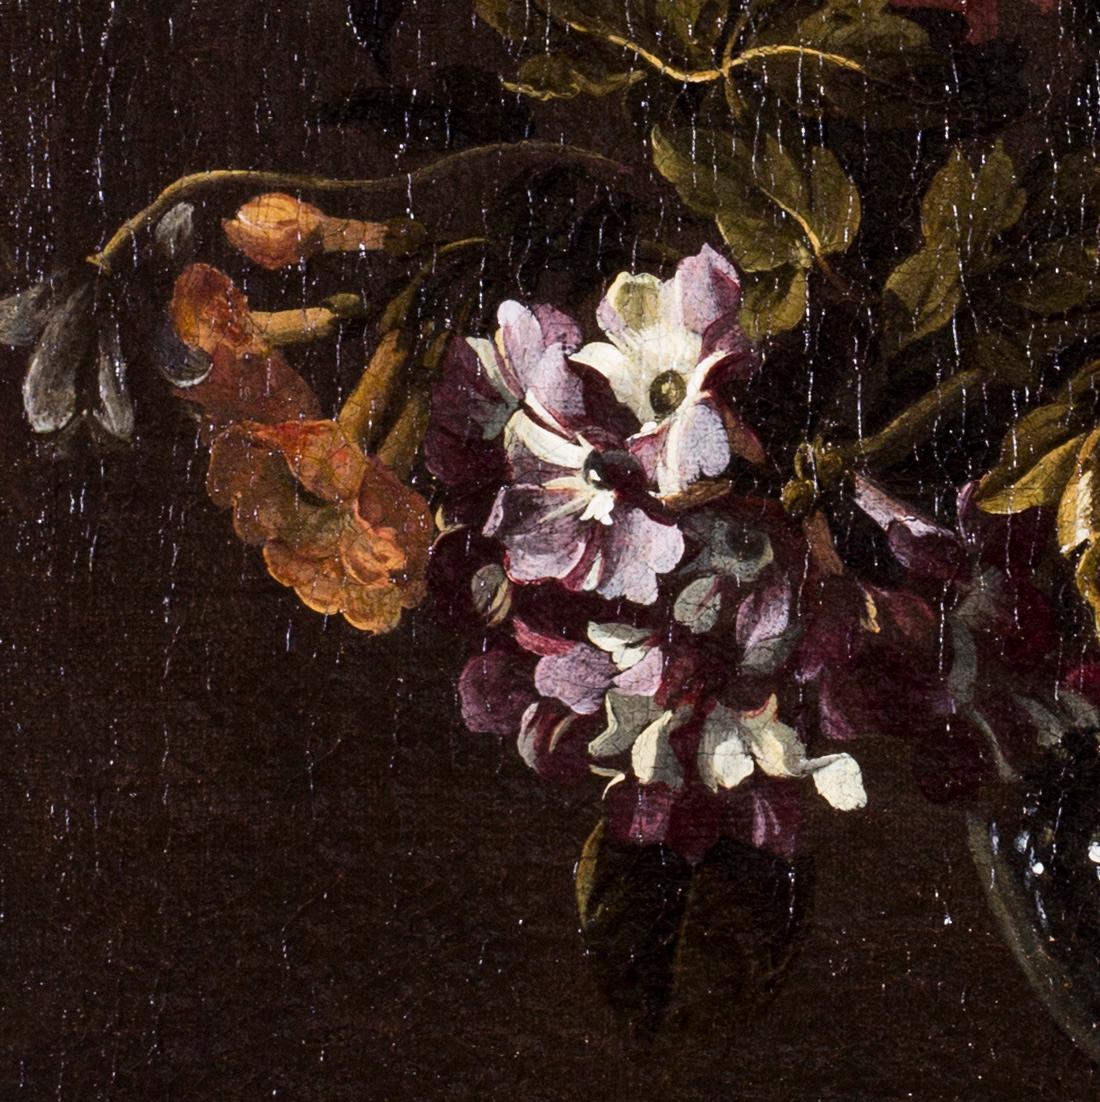 Flämische Schule, 17. Jahrhundert
Narzissen und andere Sommerblumen in einer Glasvase auf einem Sims
Öl auf Leinwand
18.7/8 x 14,3/4 Zoll. (48 x 37,3 cm.)